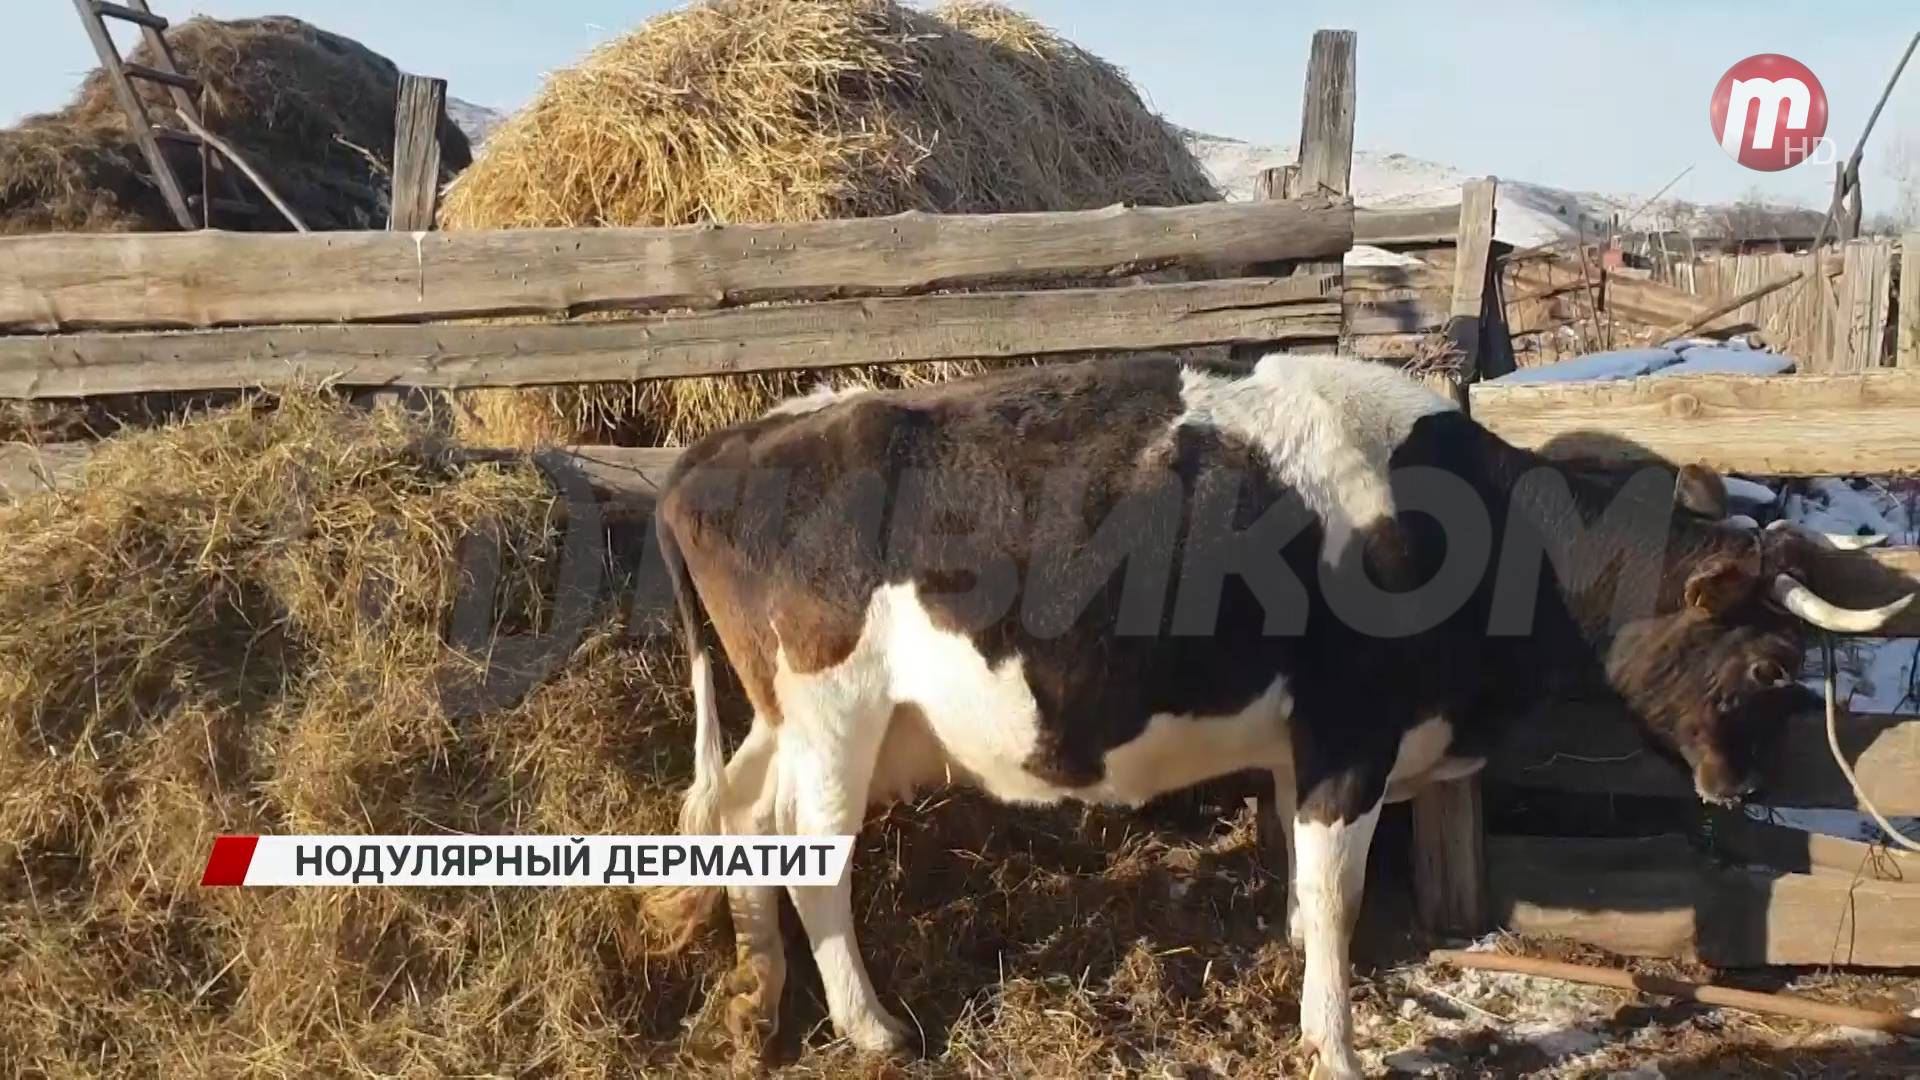 В Бурятии продолжается борьба с нодулярном дерматитом среди домашнего скота